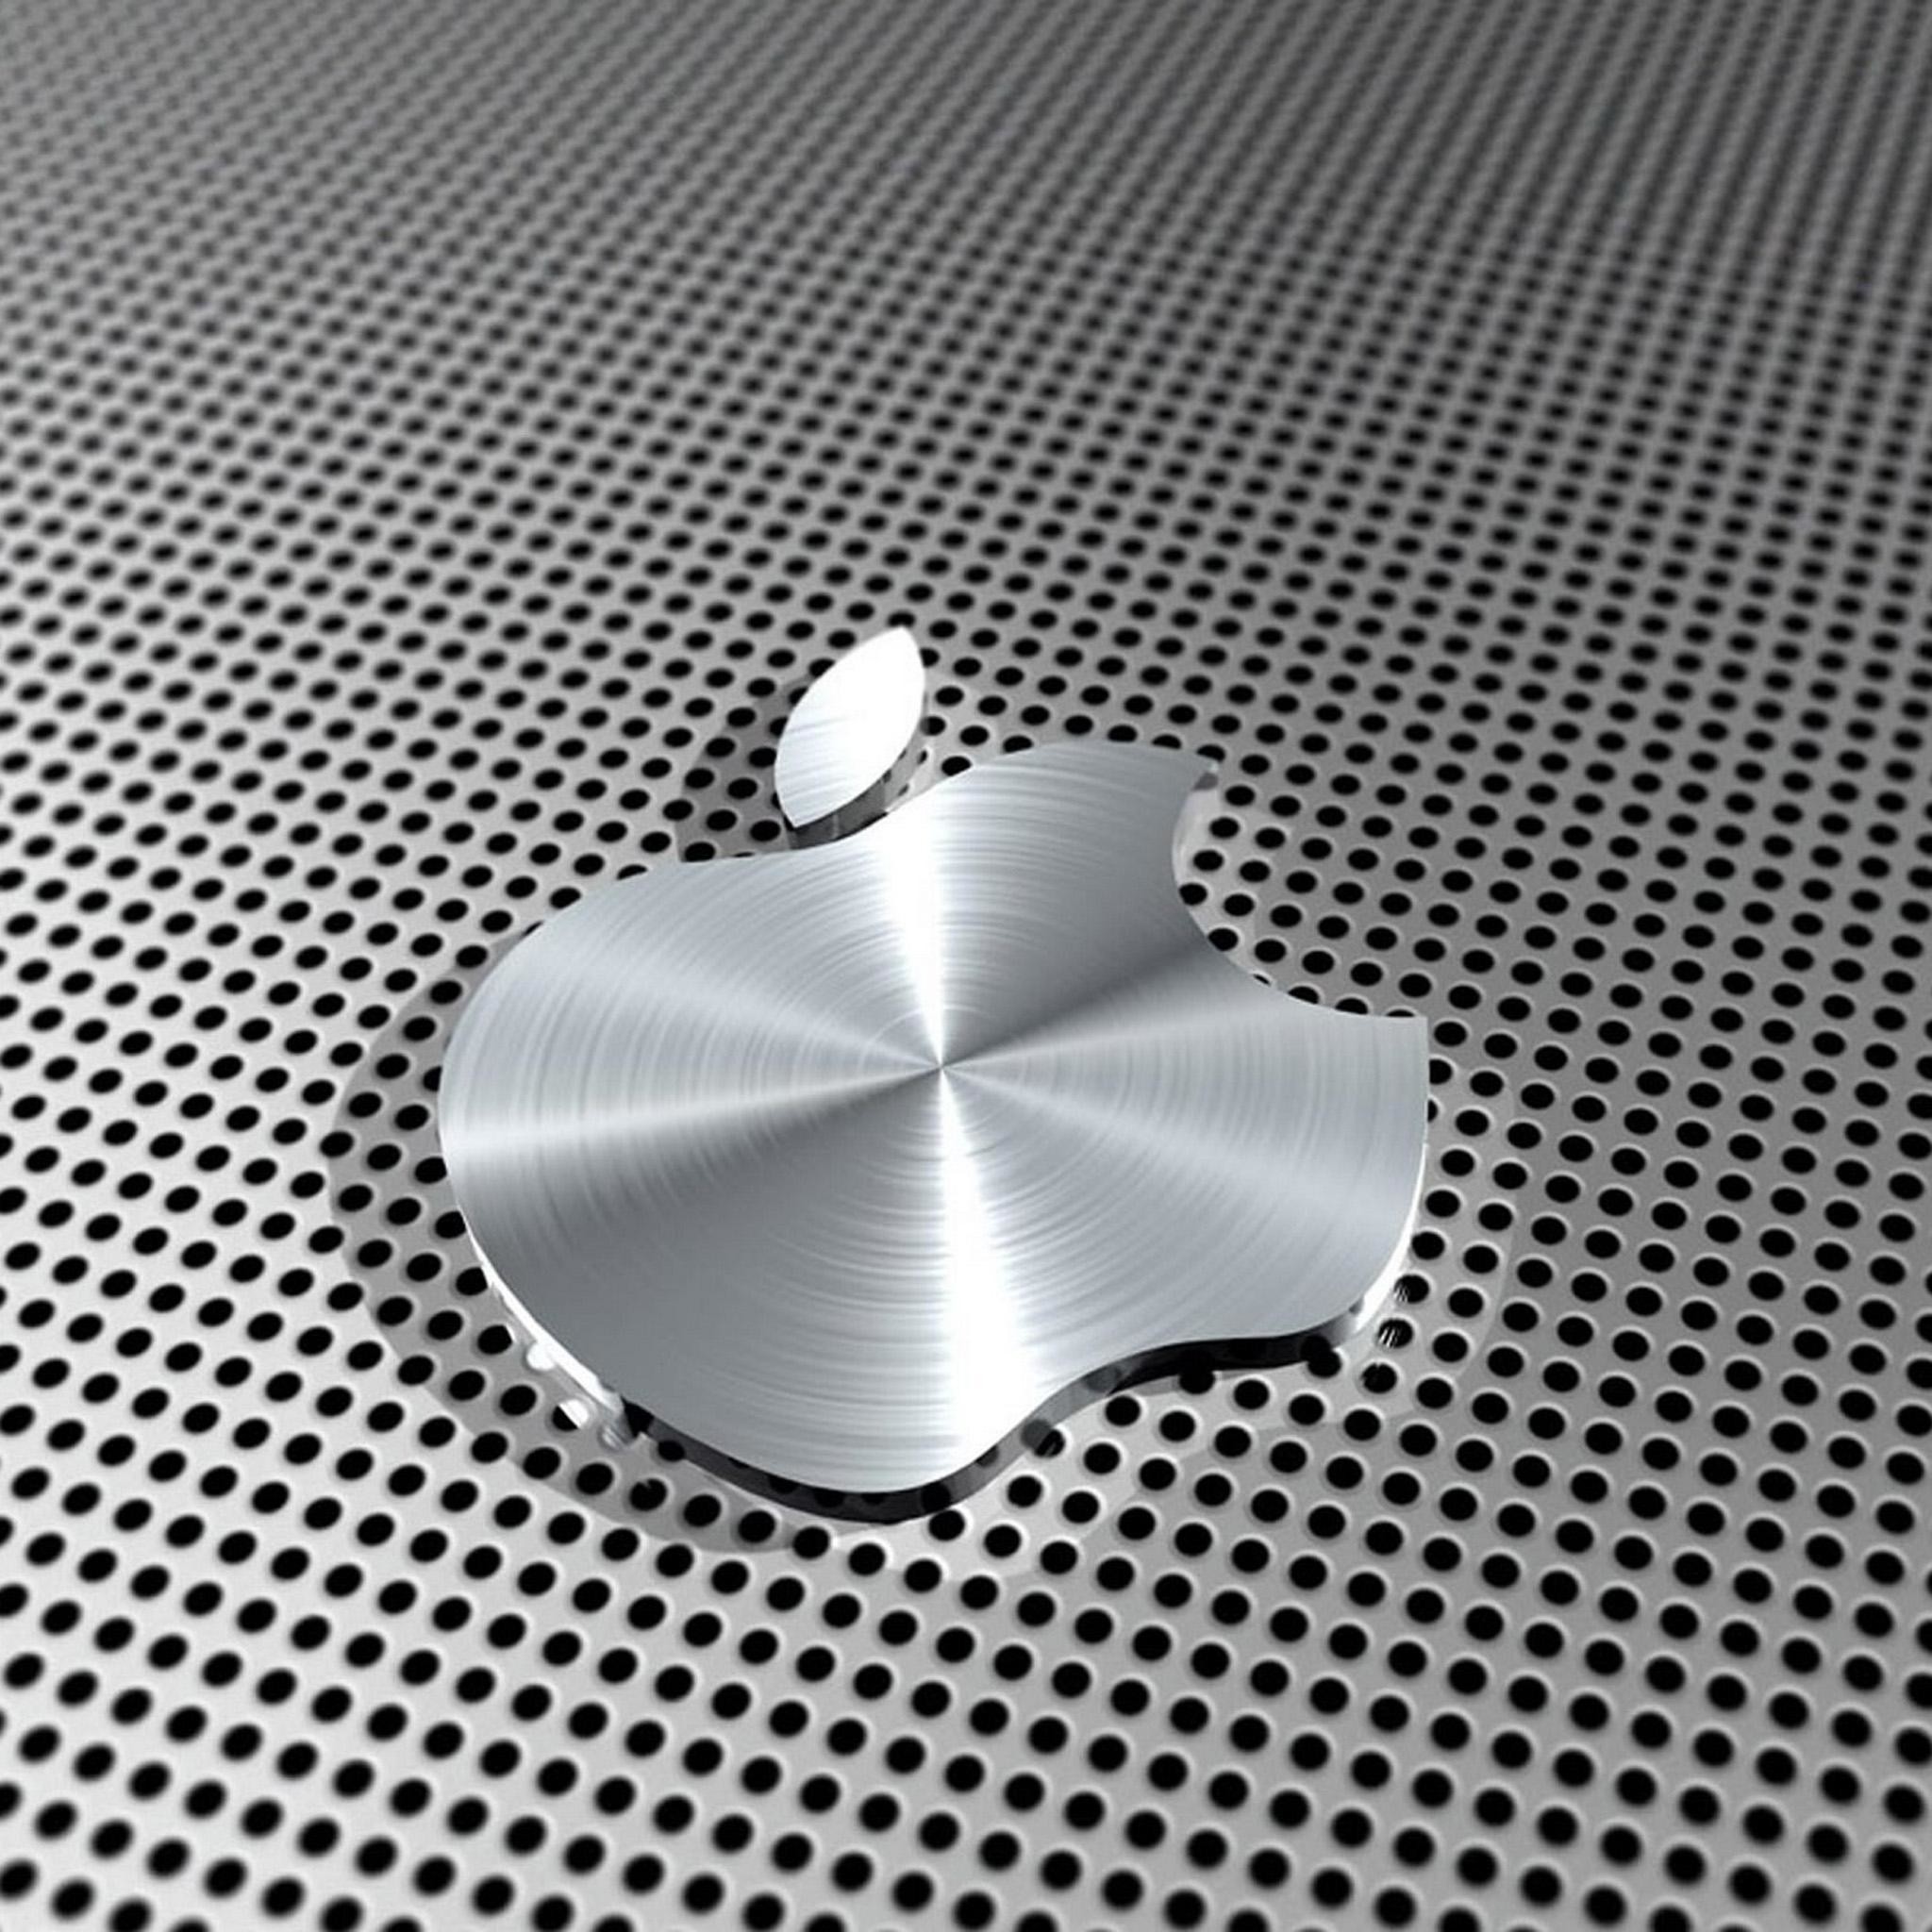 2048x2048 iPad Retina HD Wallpaper Apple Logo in Steel